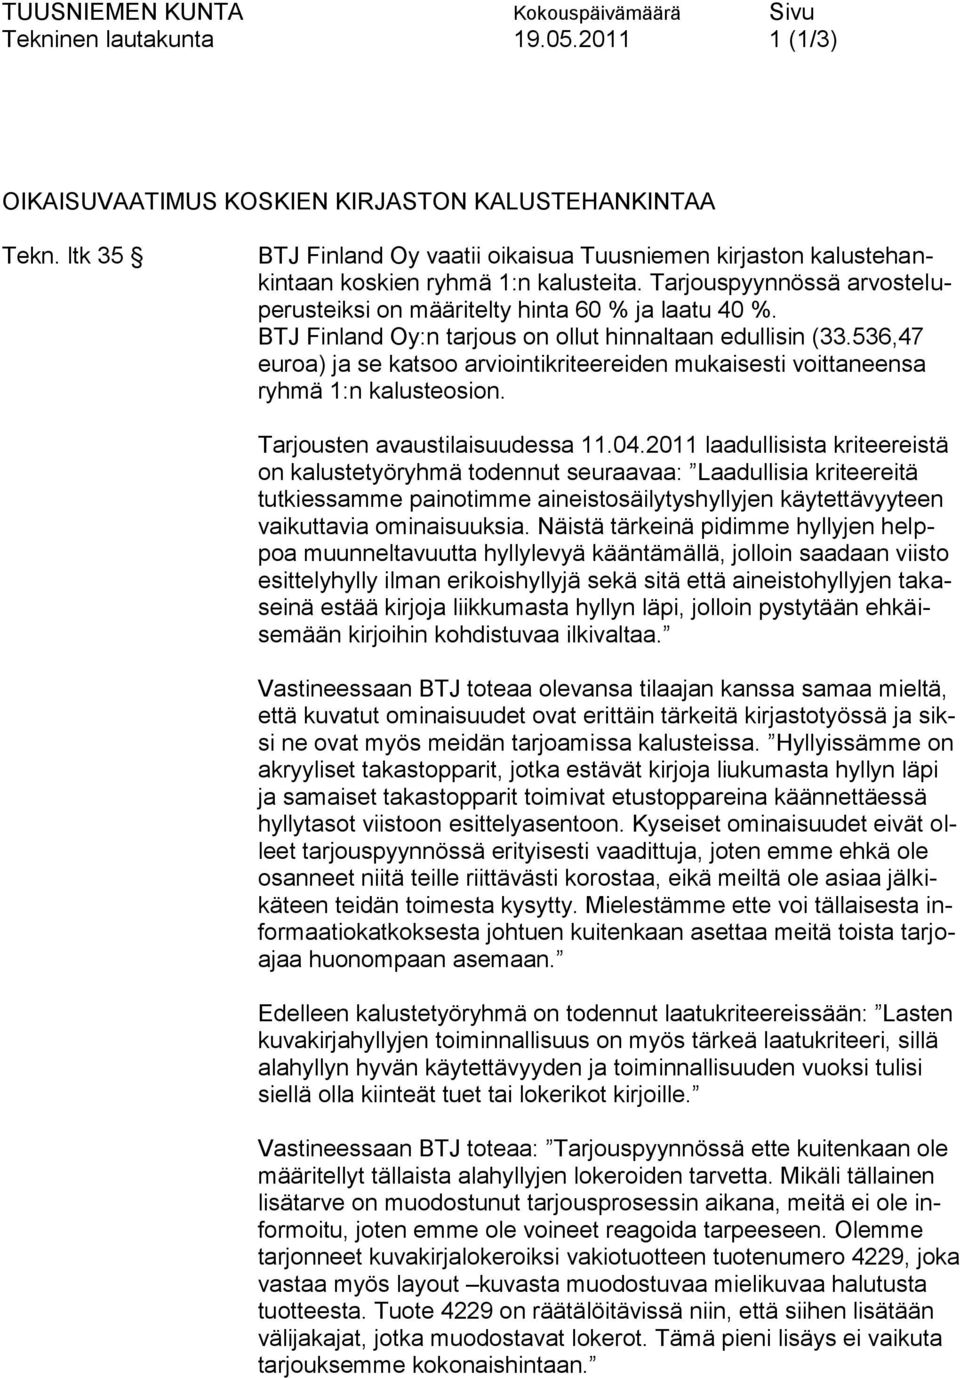 BTJ Finland Oy:n tarjous on ollut hinnaltaan edullisin (33.536,47 euroa) ja se katsoo arviointikriteereiden mukaisesti voittaneensa ryhmä 1:n kalusteosion. Tarjousten avaustilaisuudessa 11.04.